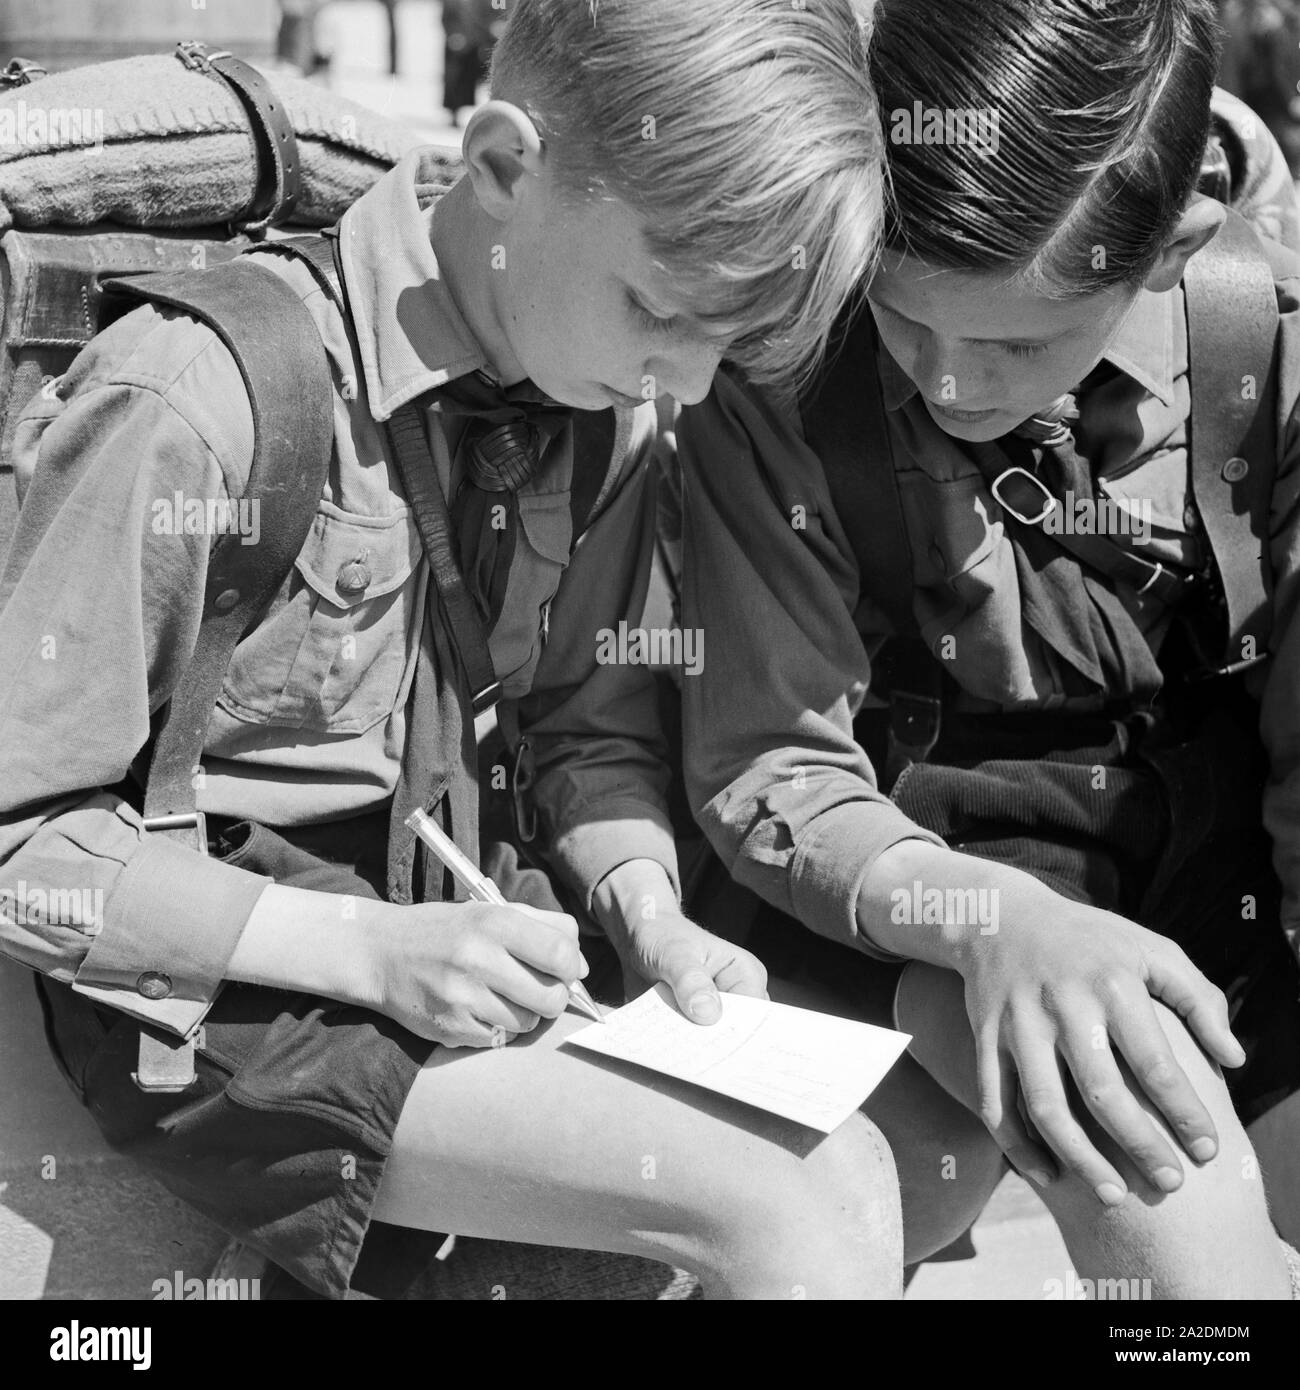 Zwei Hitlerjungen schreiben eine Postkarte von einer Wanderung, Deutschland 1930er Jahre. Two Hitler youths writing a postcard from a wandering trip, Germany 1930s. Stock Photo